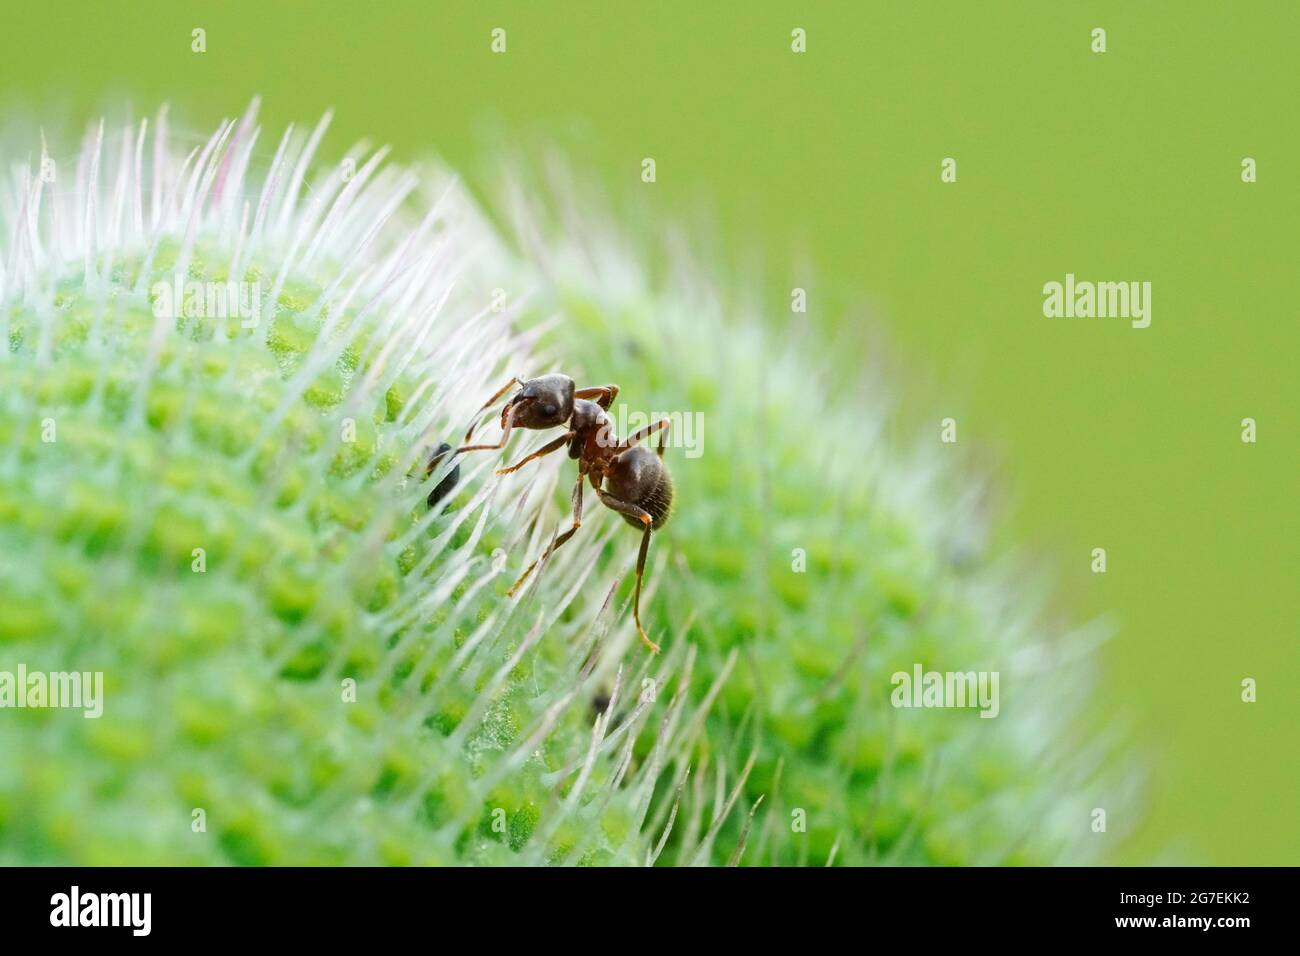 Ameise auf einer Mohnpflanze und grünem Hintergrund. Insekt in einer detailreichen Nahaufnahme. Formicidae Stockfoto